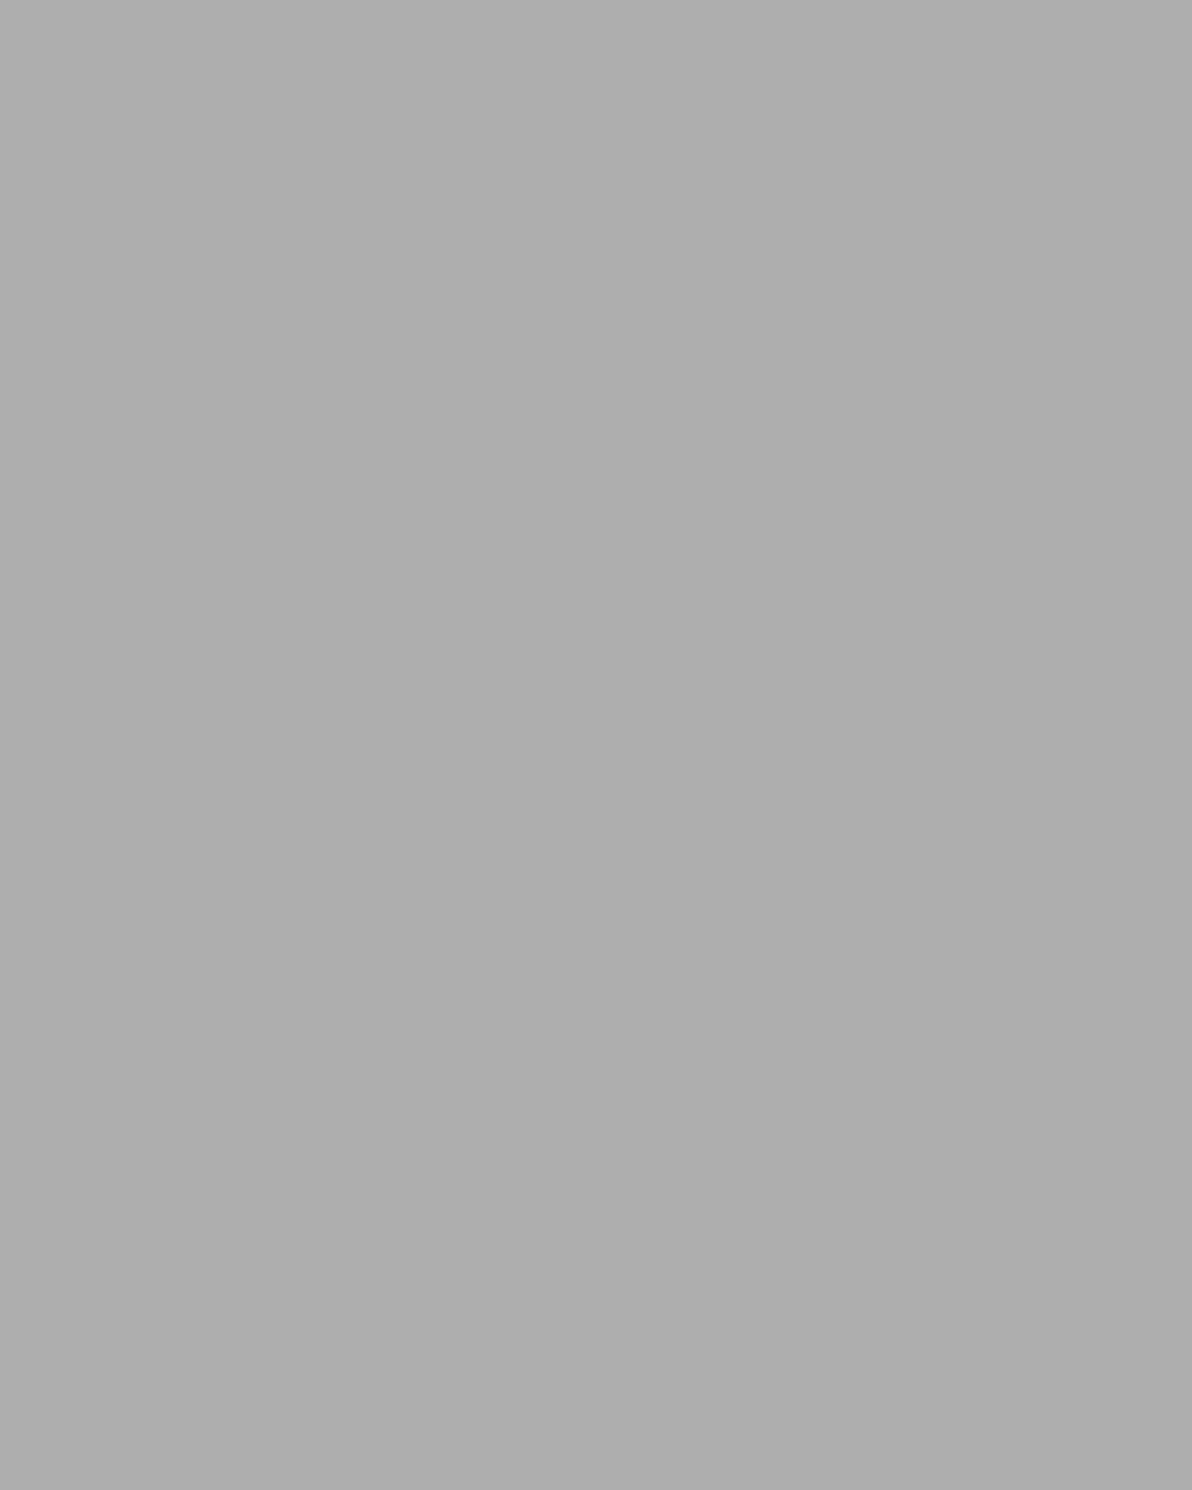 Станислав Косенков. Портрет писателя Федора Достоевского (фрагмент). 1971. Нижнетагильский музей изобразительных искусств, Нижний Тагил, Свердловская область